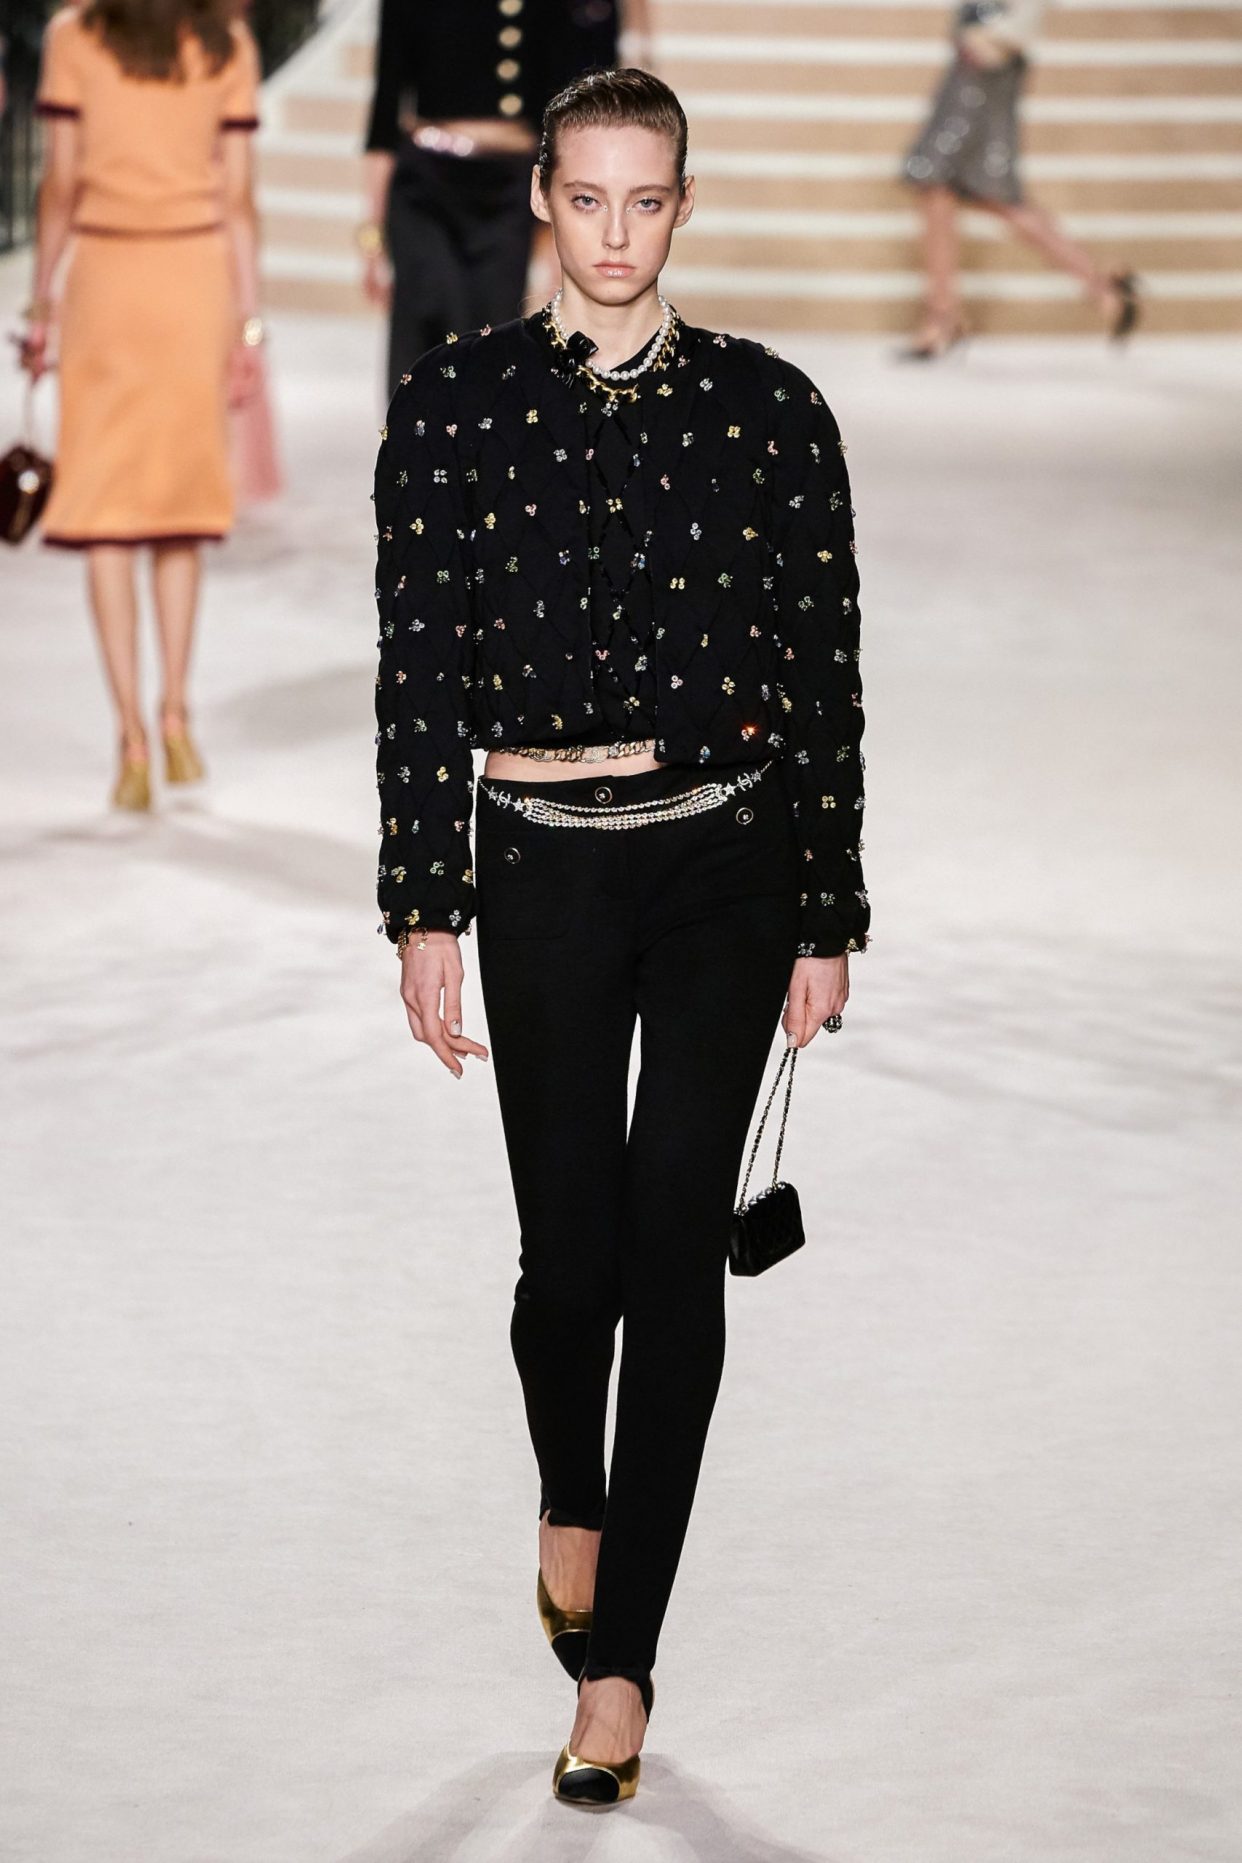 法国女星Alma Jodorowsky 也是Chanel华丽世界观的代言面孔之一